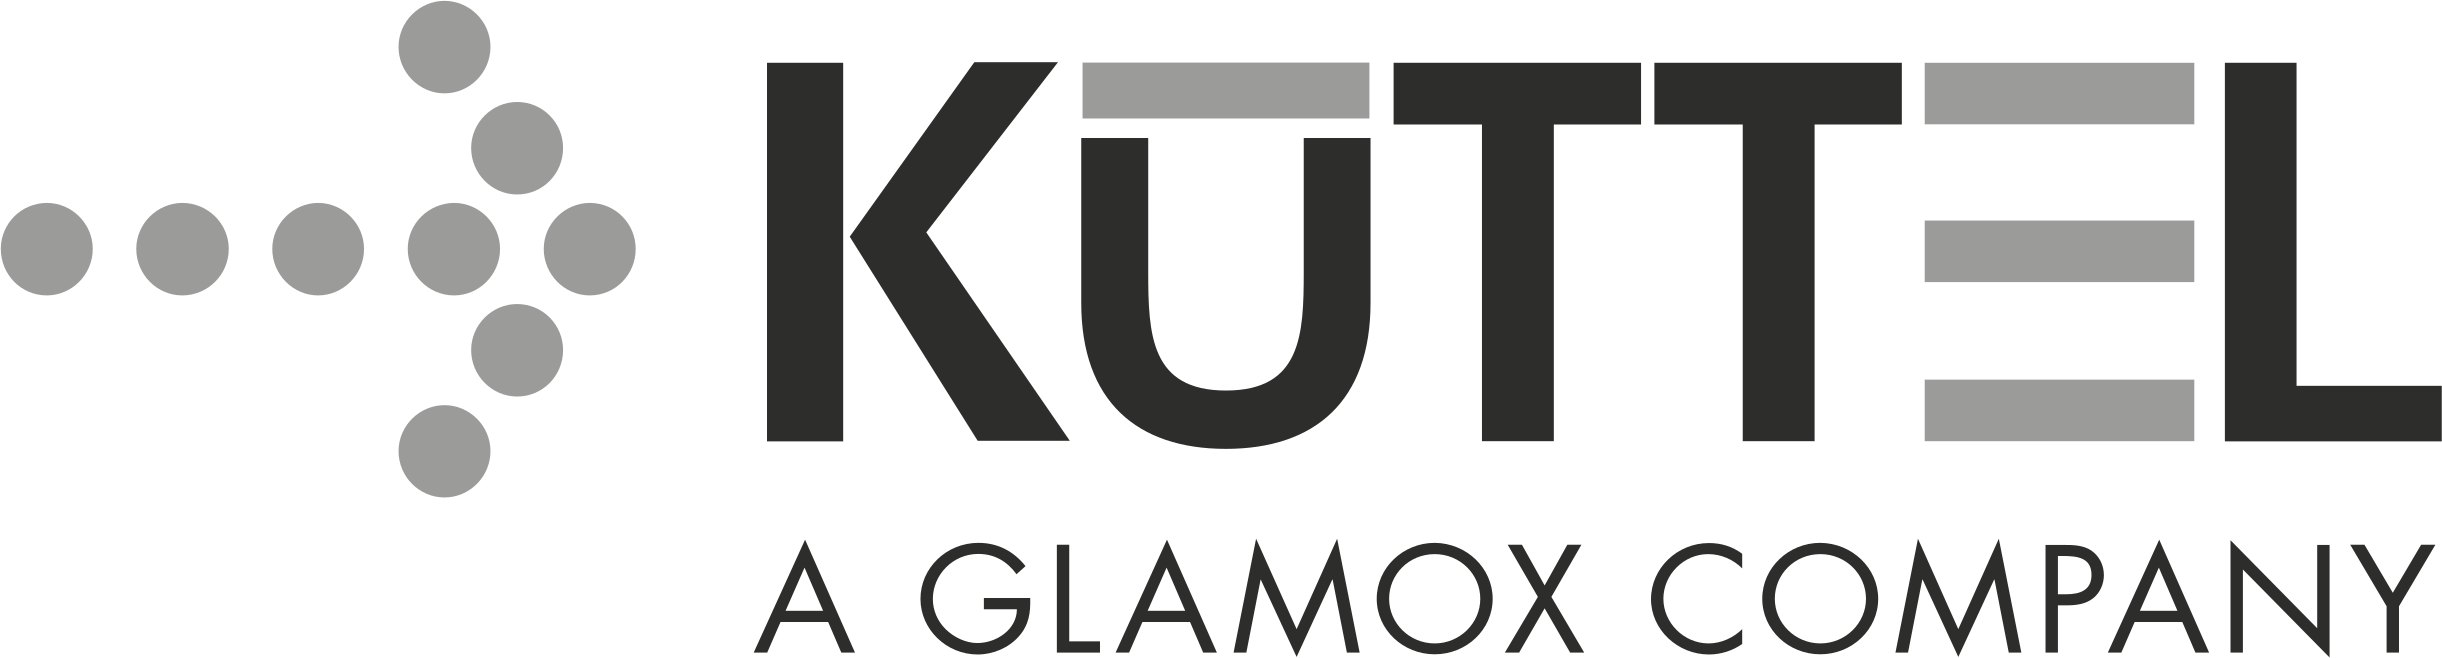 KUTT_glamox_company_weiss.png